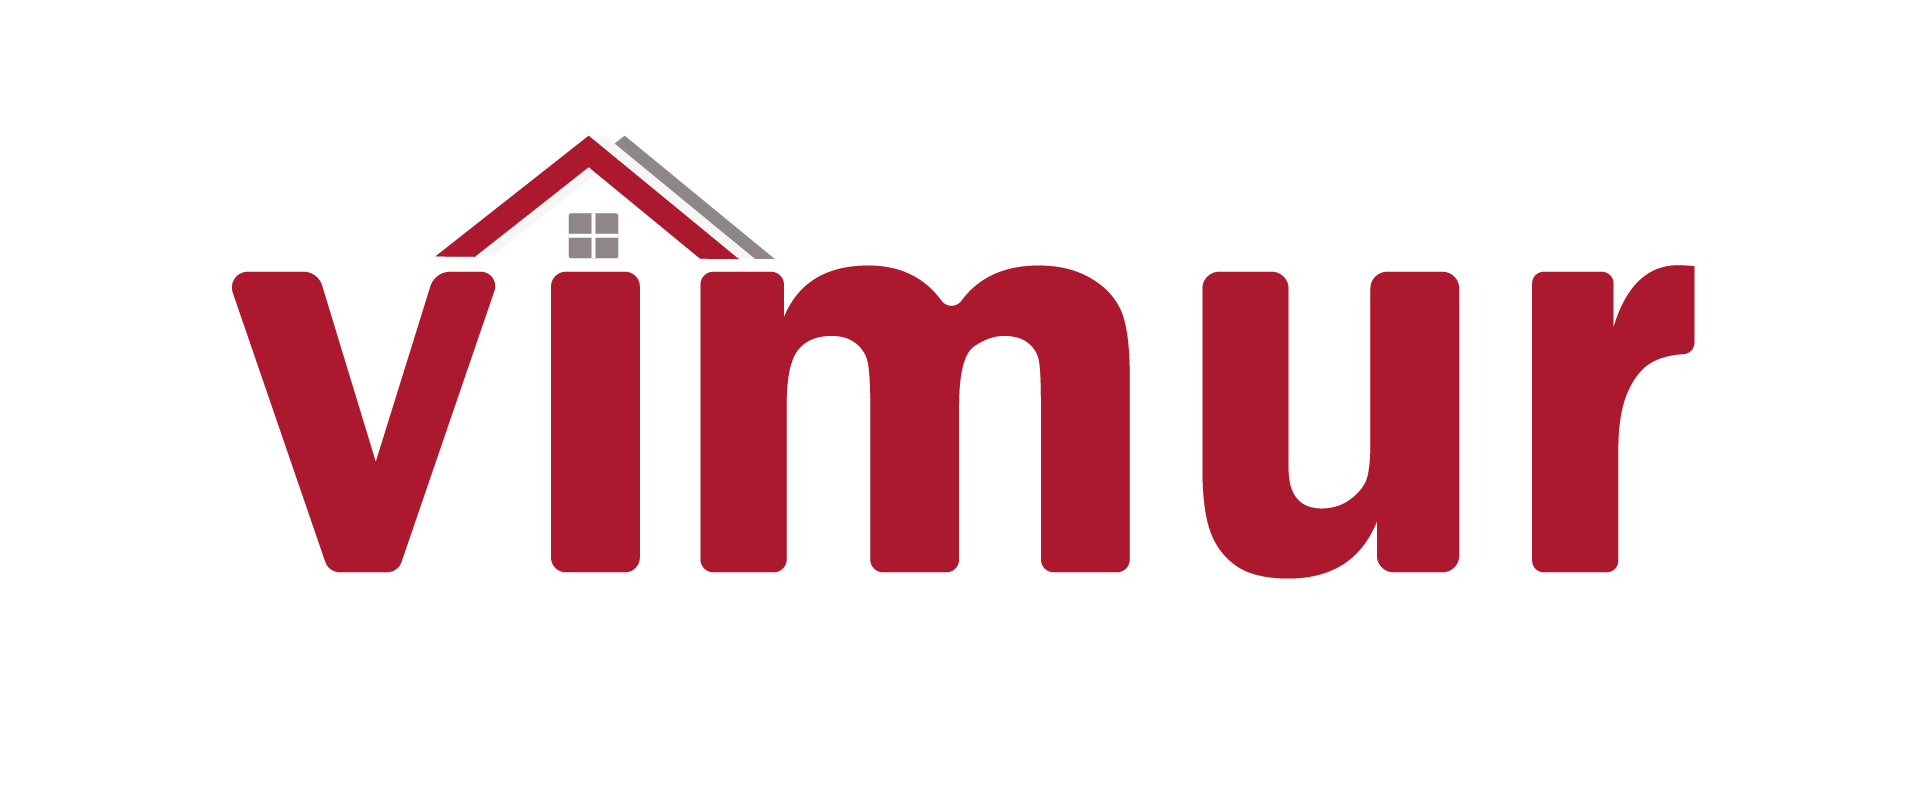 Plataforma de alojamiento para estudiantes y personal internacional en la UMU